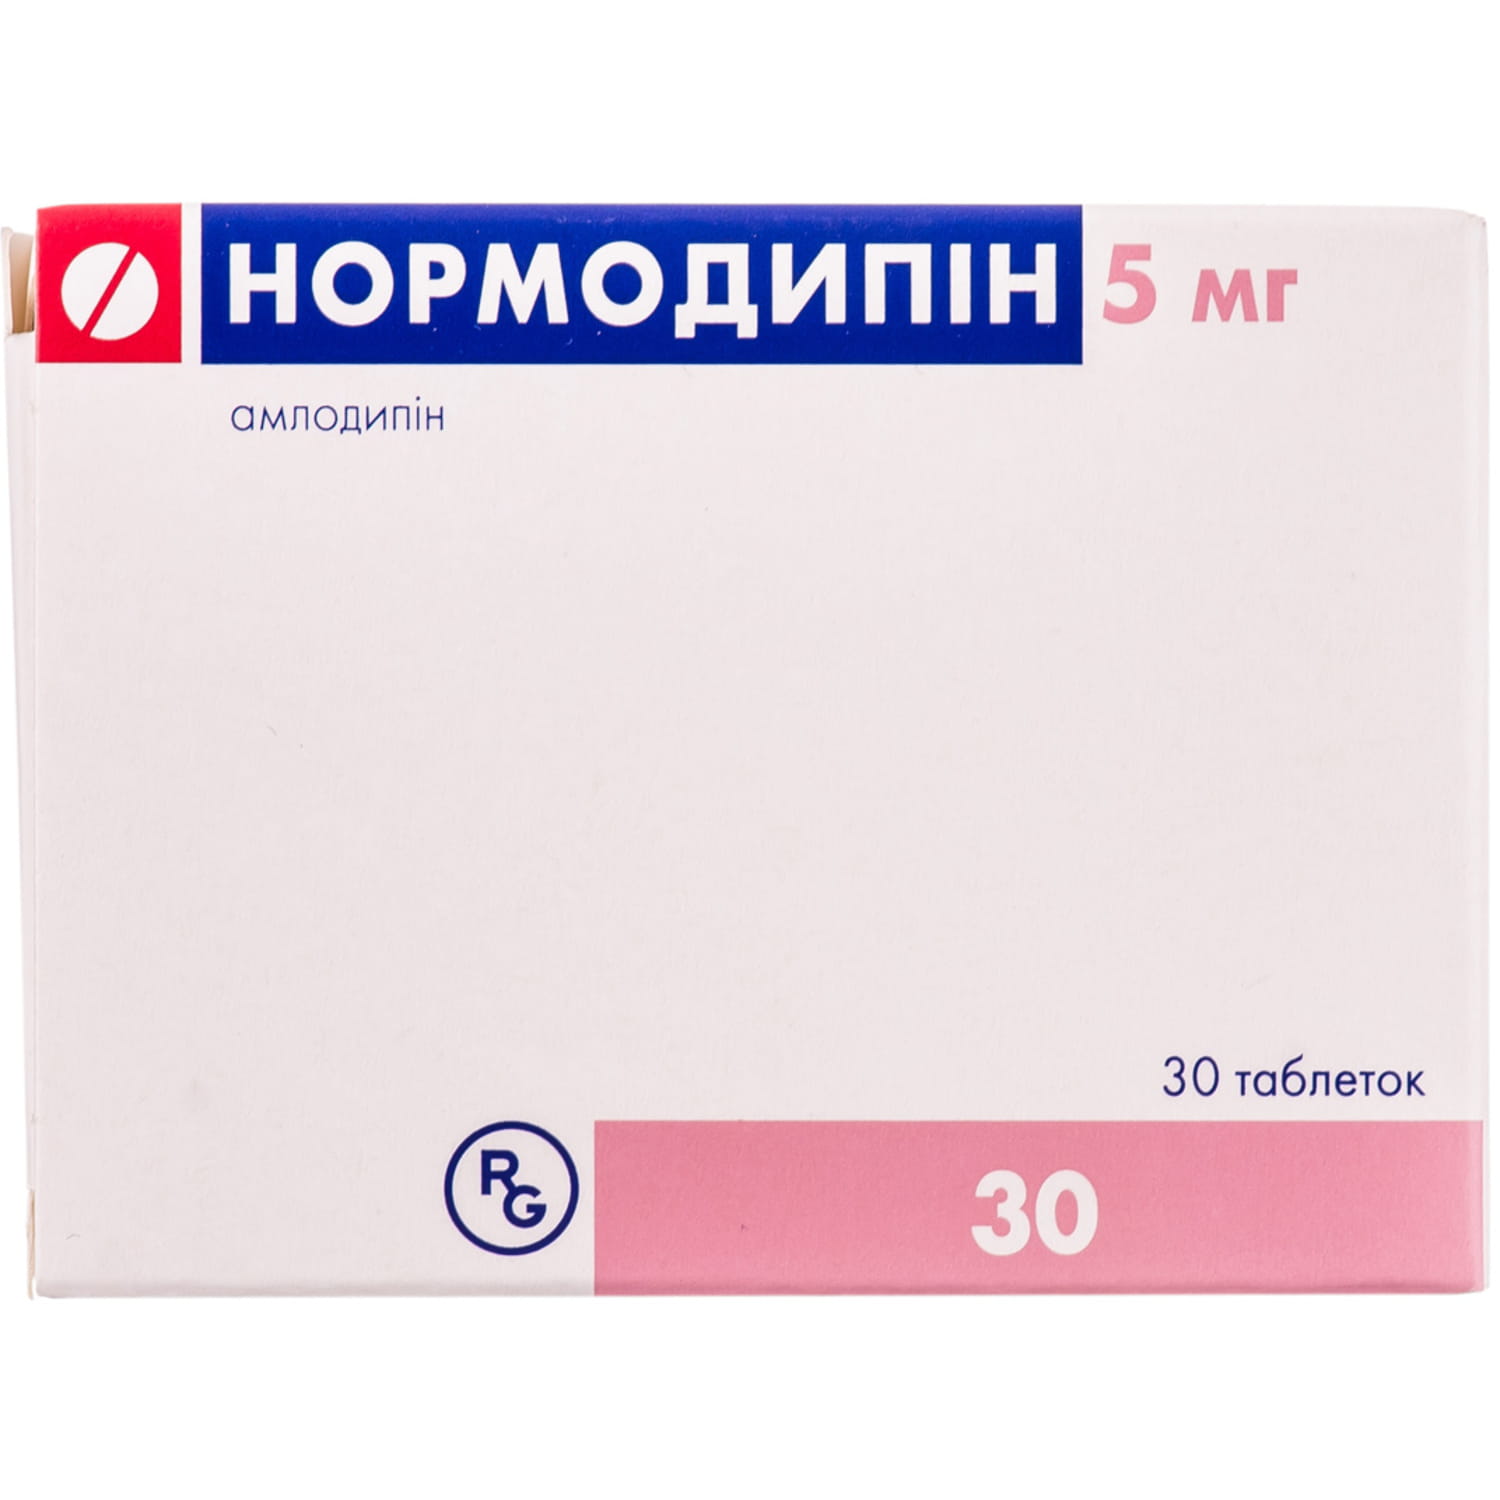 Нормодипин 10 Цена В Москве